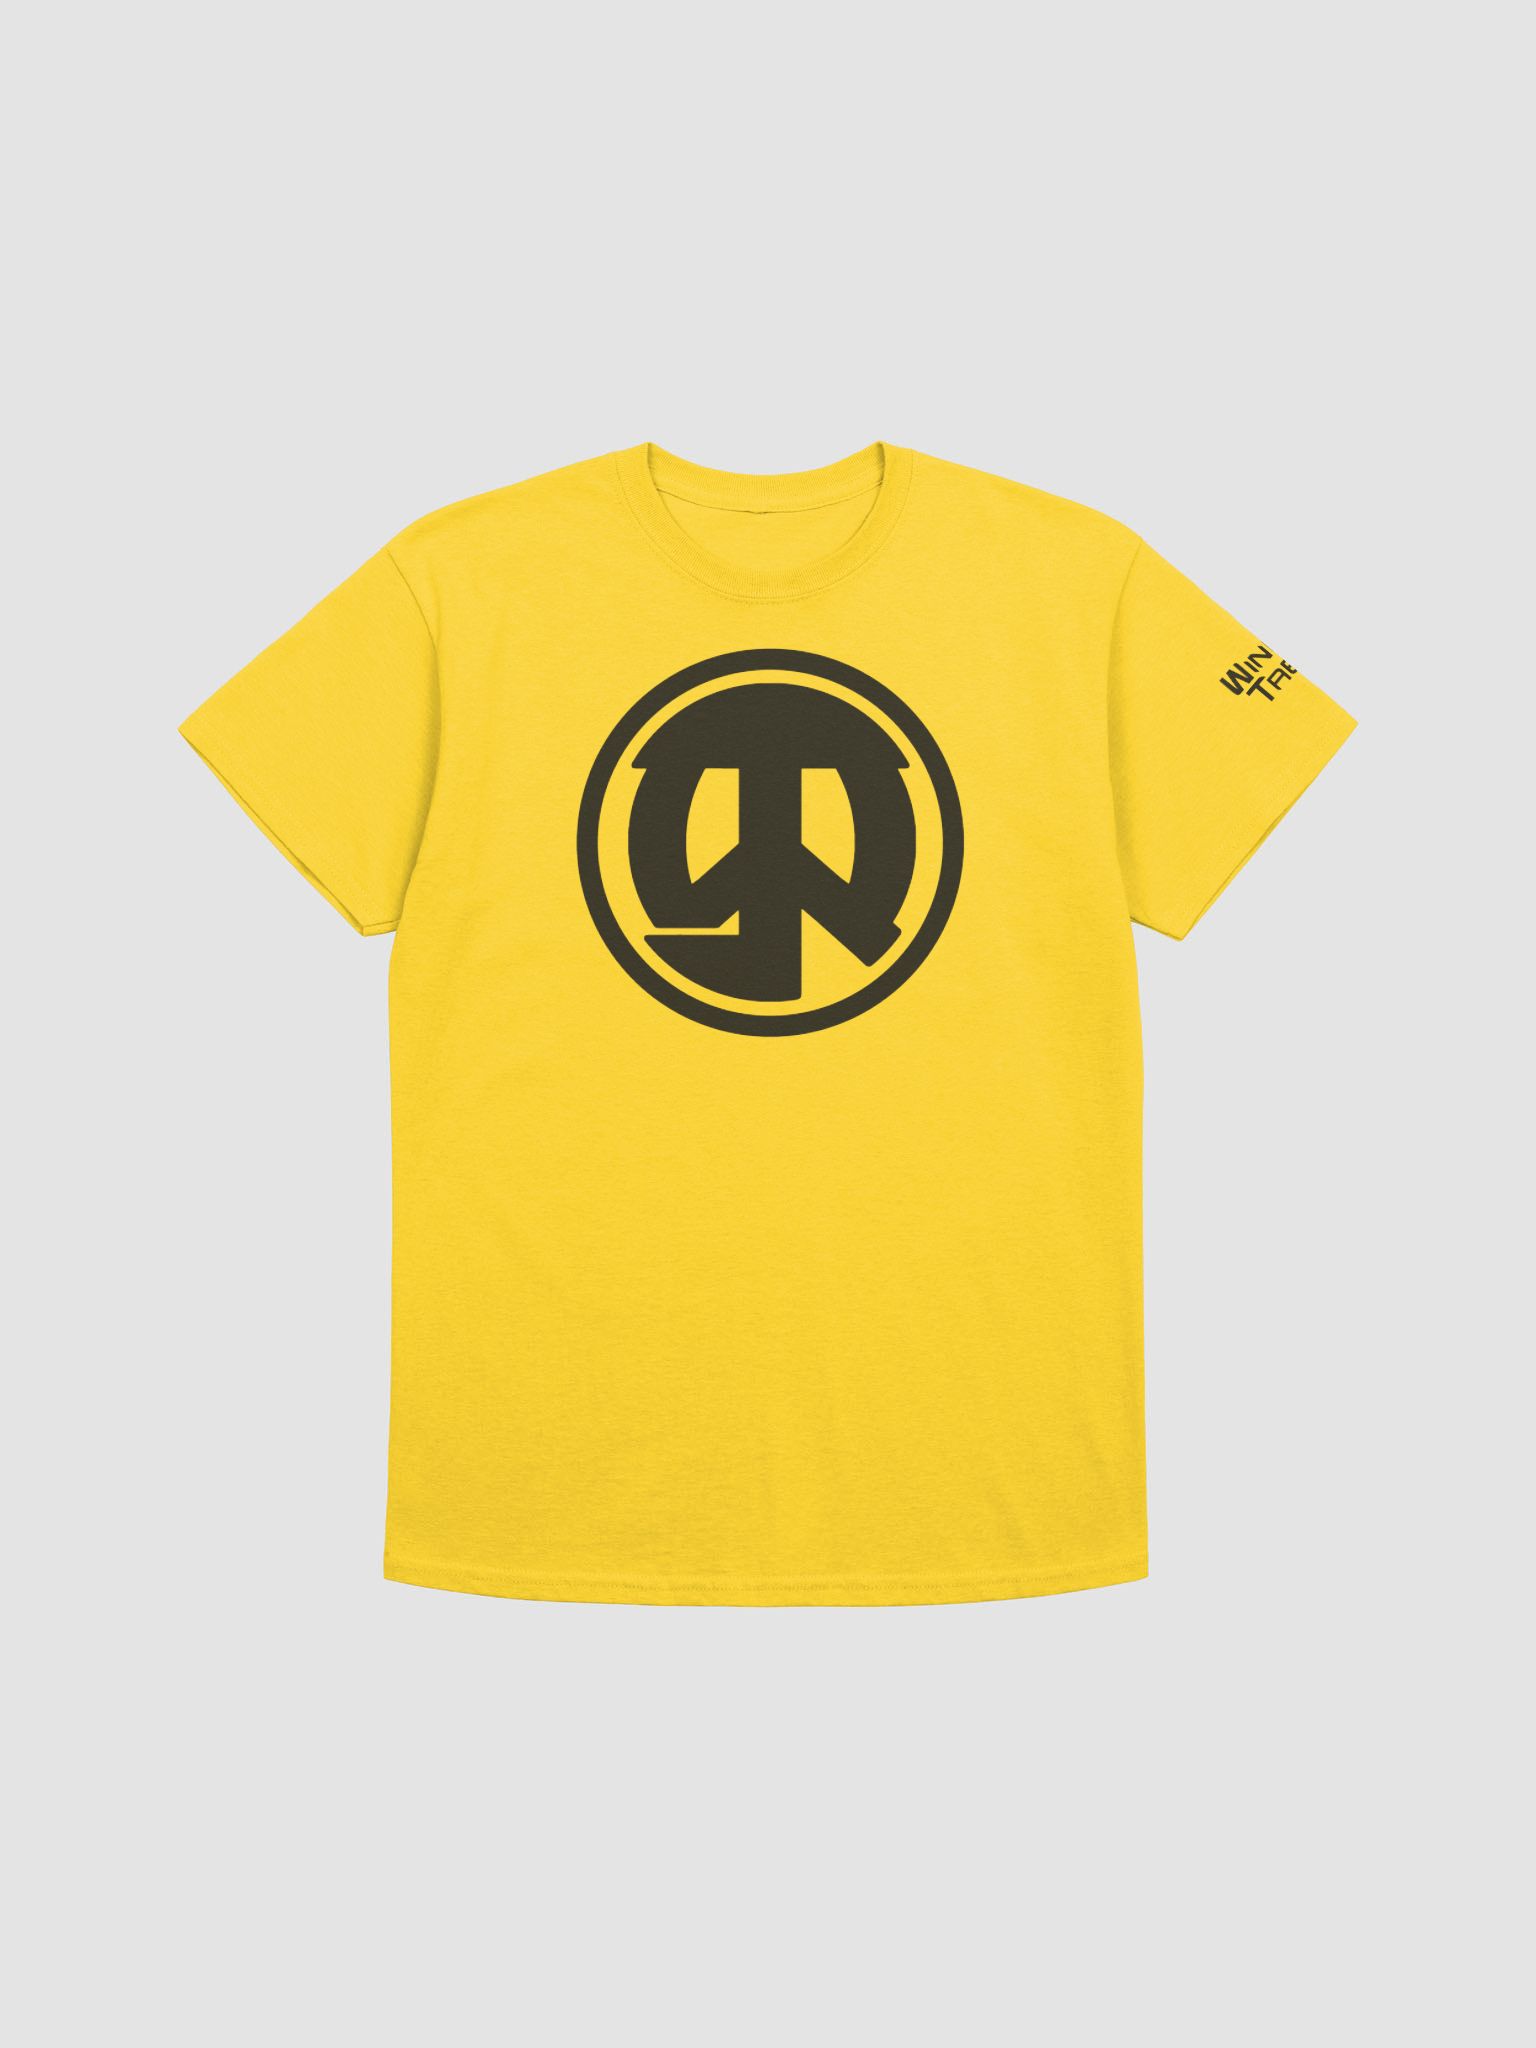 WinnieTabz T-Shirt | WinnieTabz Merch